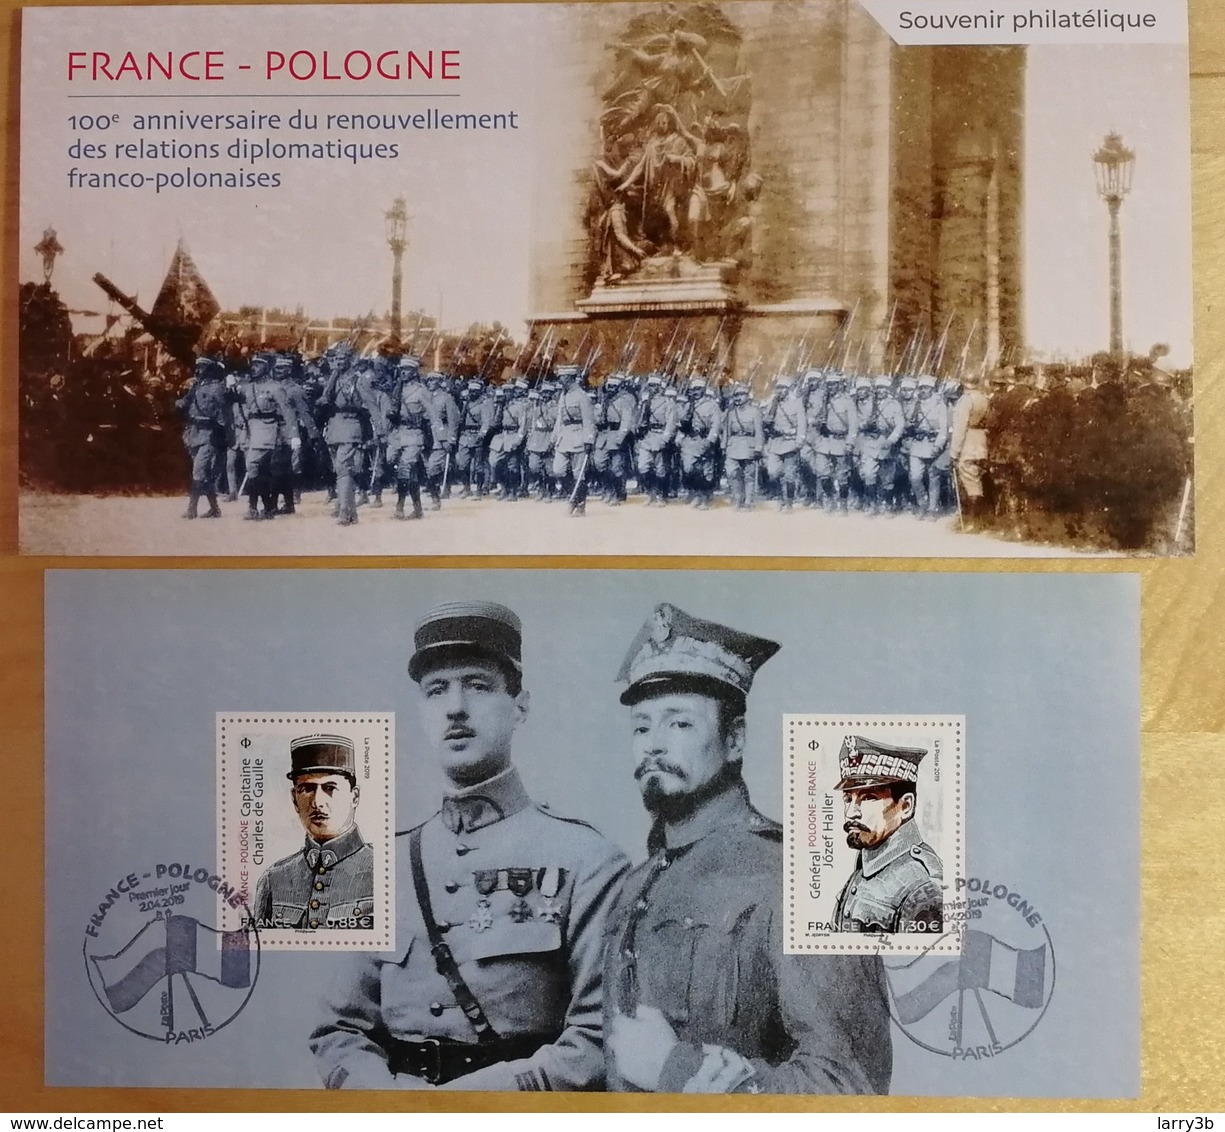 BS 2019 - BLOC SOUVENIR - FRANCE - POLOGNE - "100e Anniversaire Relation Diplomatique" - Oblitéré 1er JOUR - 02/04/2019 - Foglietti Commemorativi